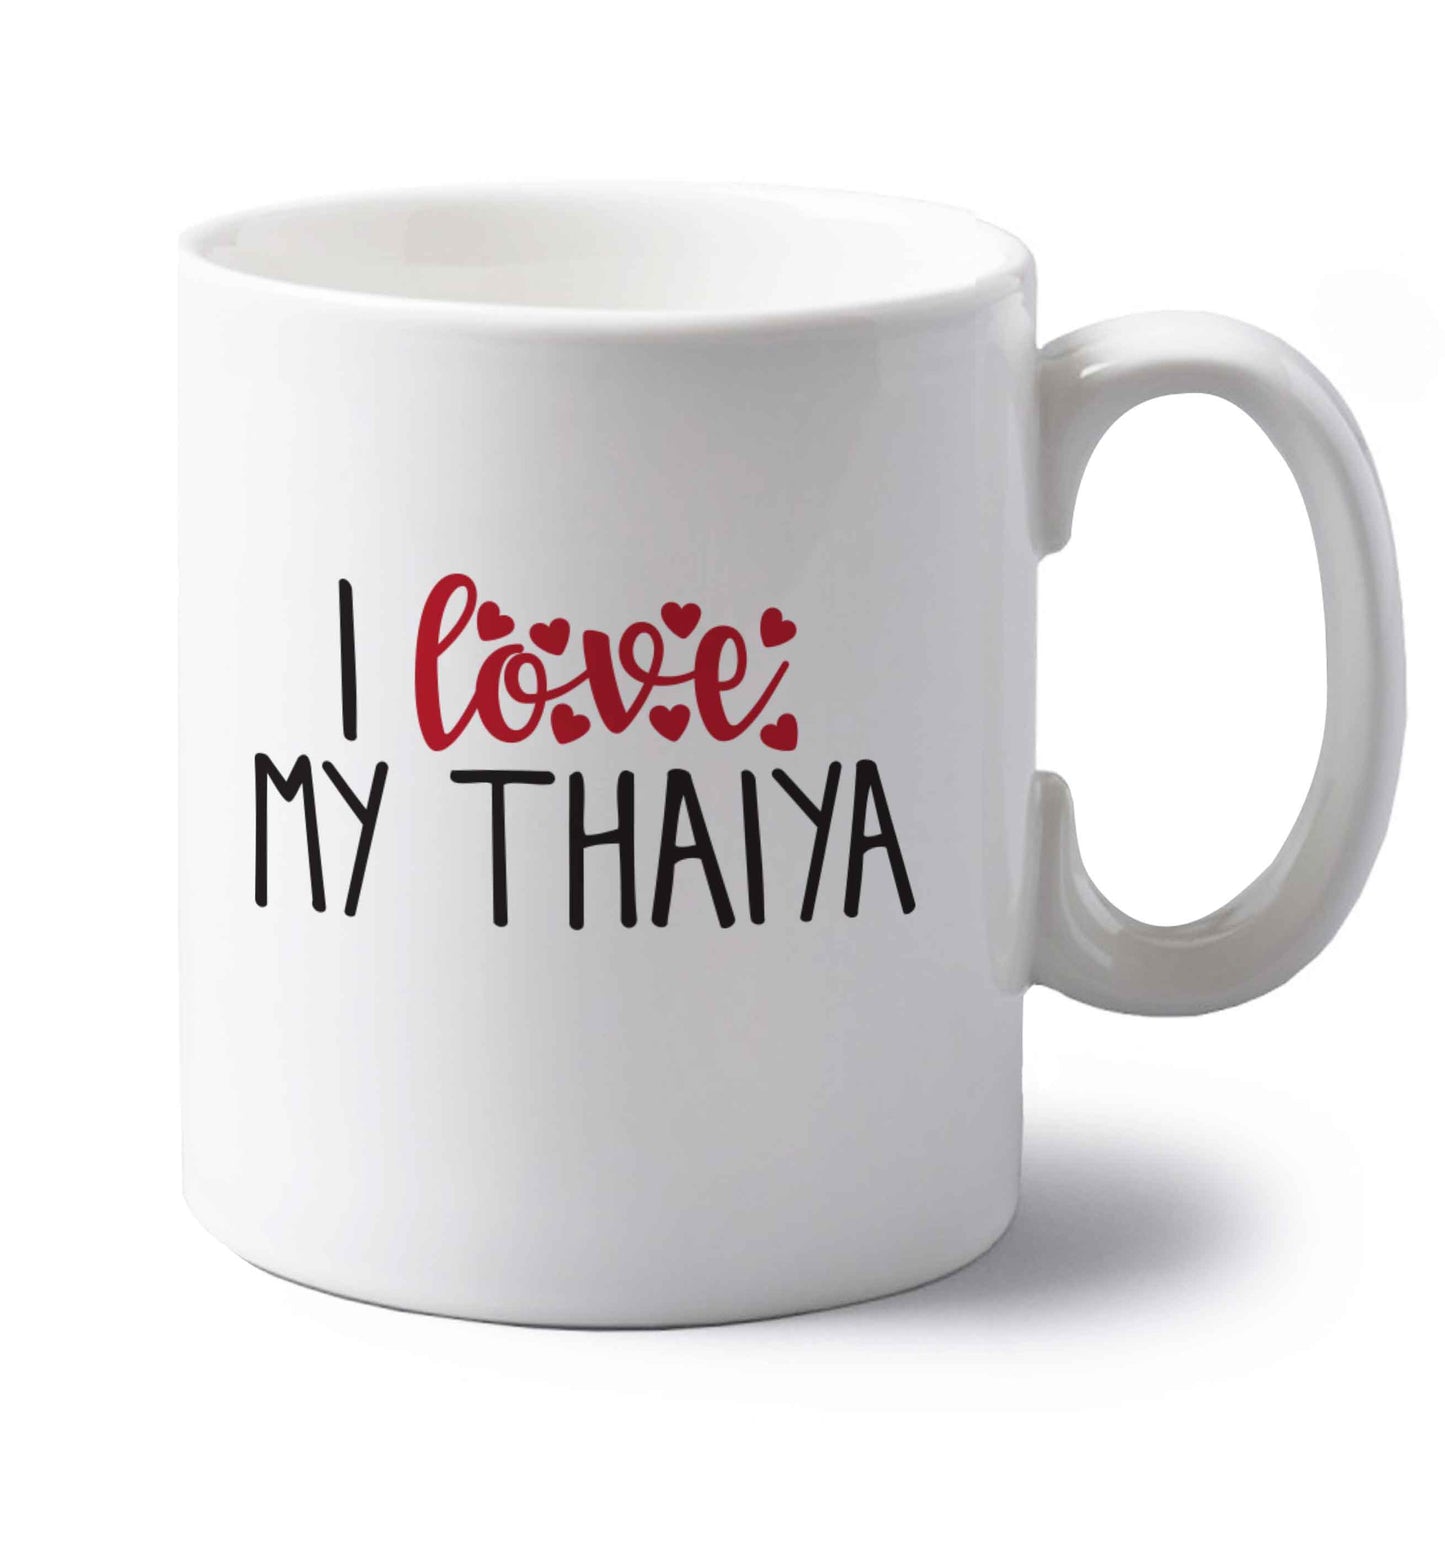 I love my thaiya left handed white ceramic mug 